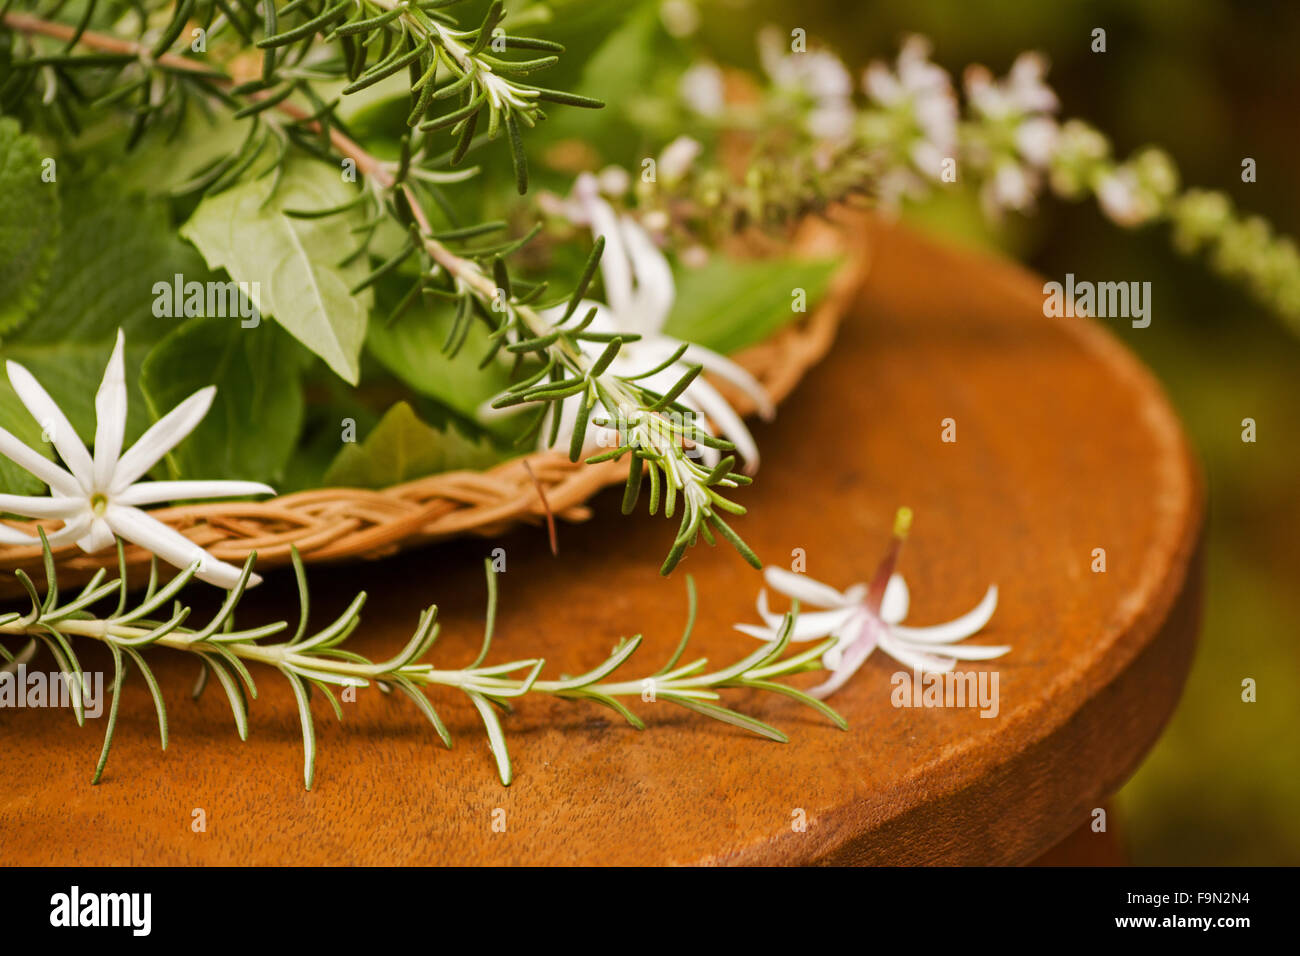 Fragrant plants Stock Photo